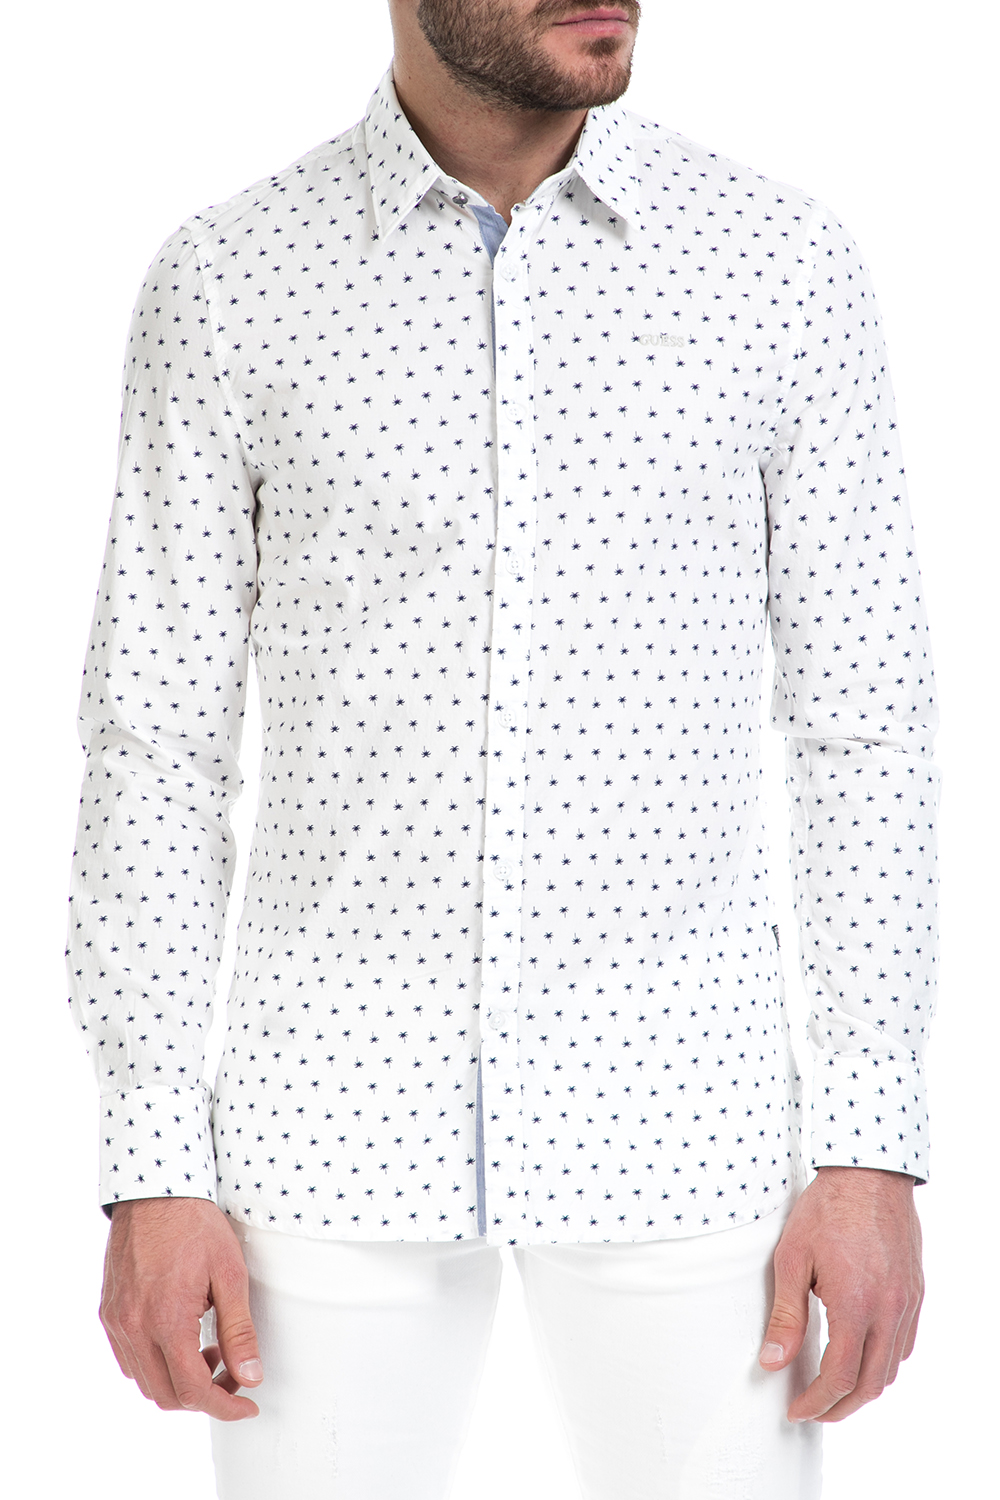 Ανδρικά/Ρούχα/Πουκάμισα/Μακρυμάνικα GUESS - Ανδρικό πουκάμισο GUESS SUNSET λευκό